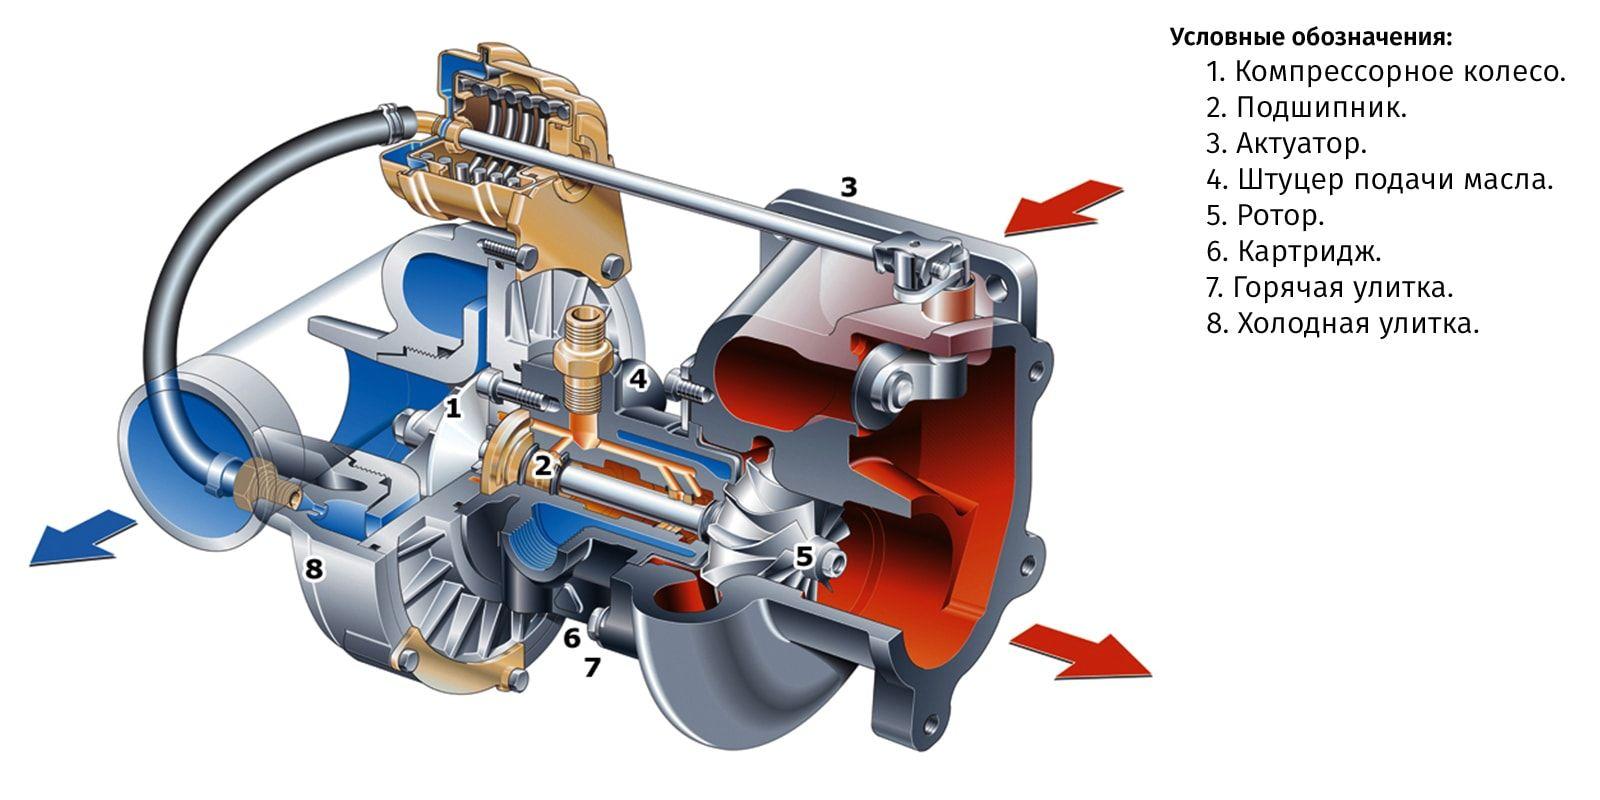 Comment entretenir un turbocompresseur ? Comment utiliser la voiture turbo?